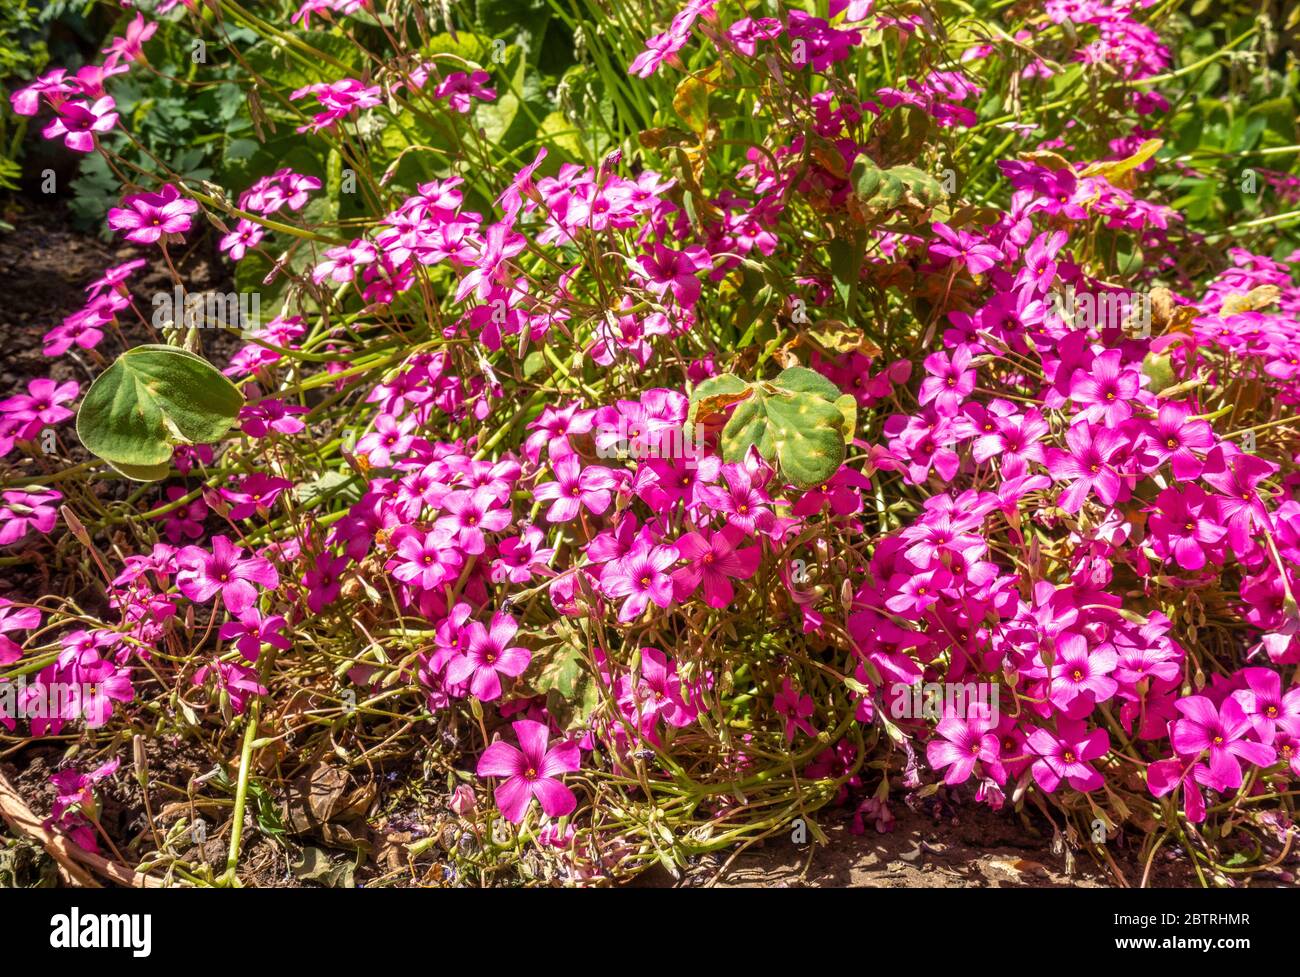 Eine Gruppe von leuchtend rosa, fünf Blütenblätter, Sauerampfer Blumen - oxalis articulata - gegenüber dem hellen Frühjahr britischen Frühlings Sonnenschein. Stockfoto